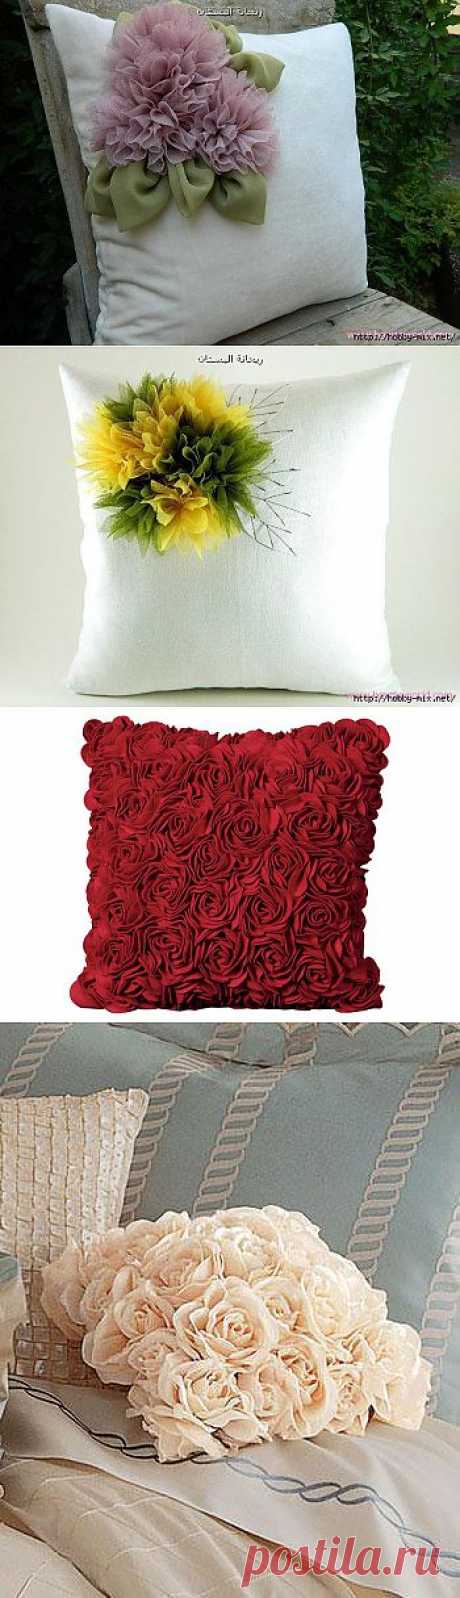 Красивые подушки с цветочным декором.